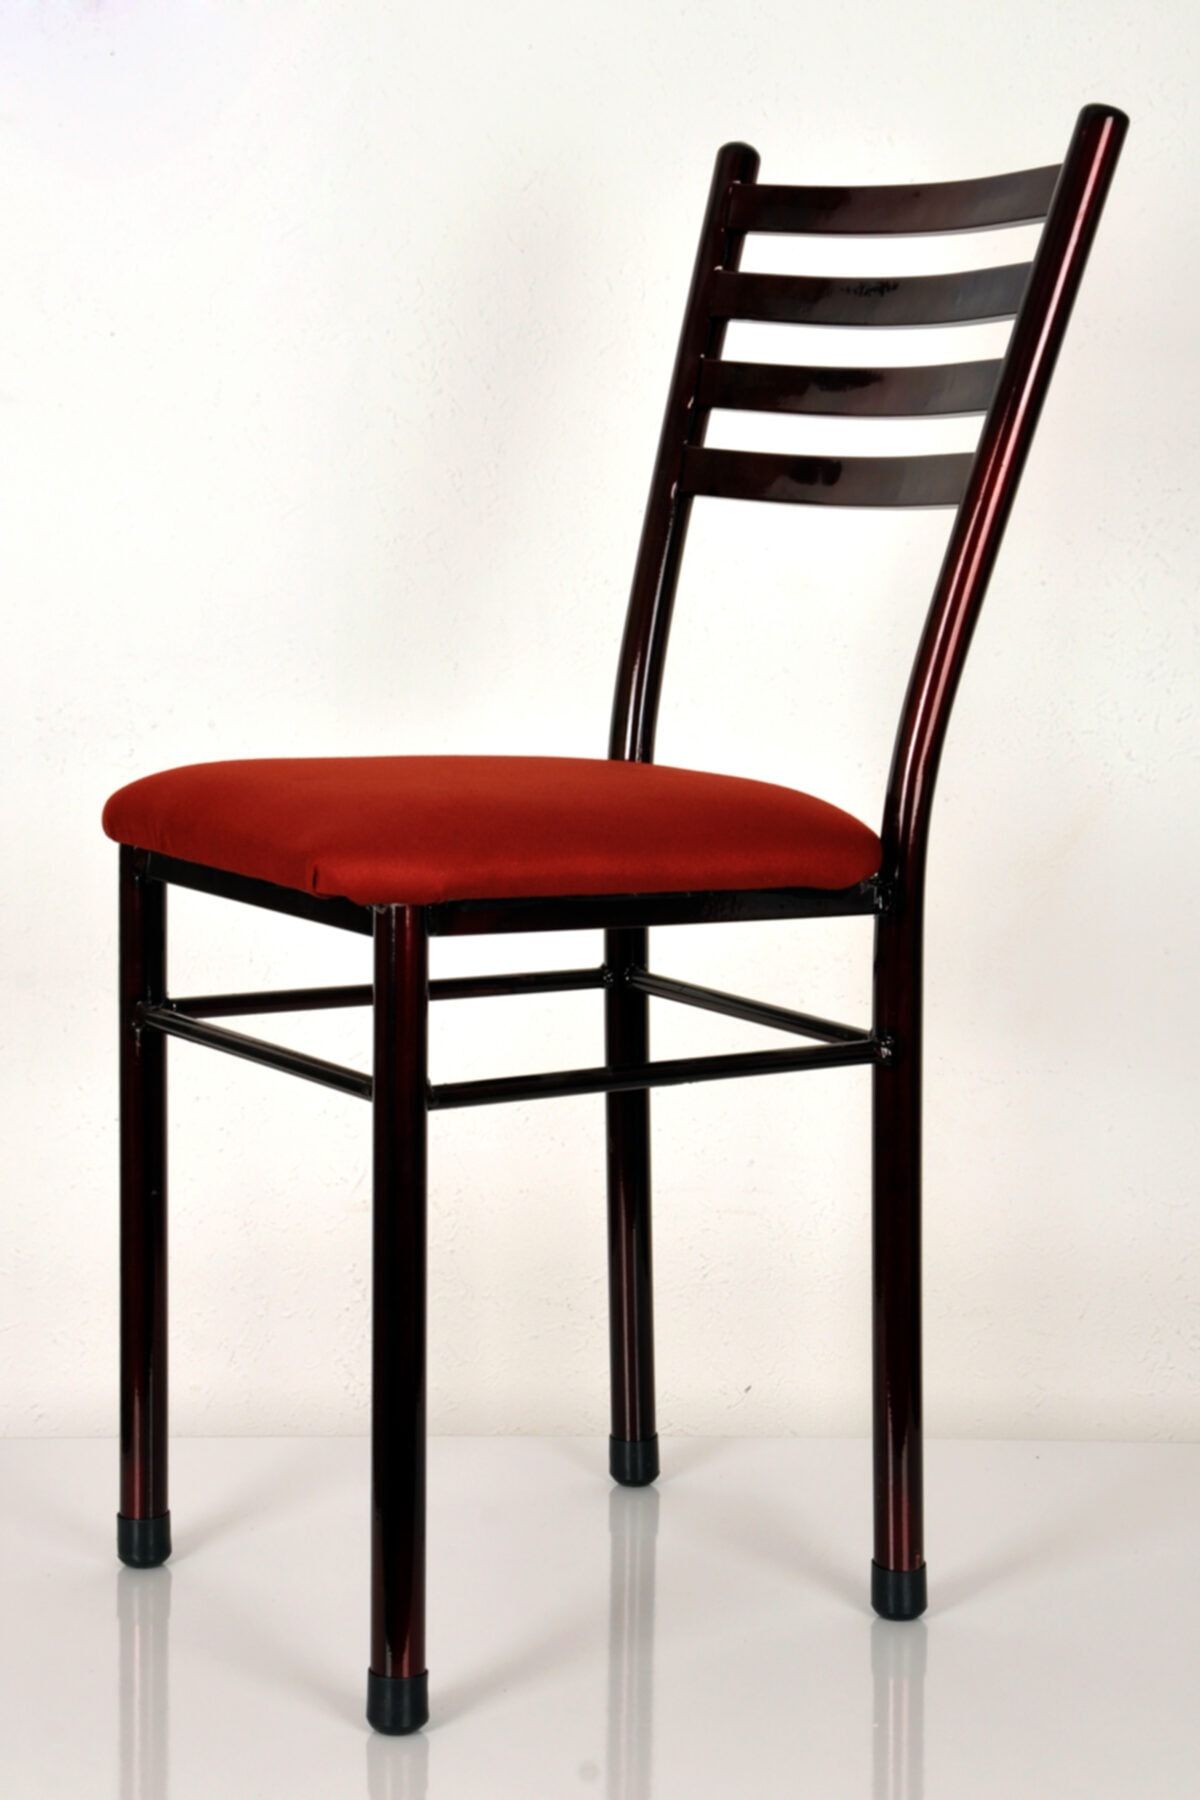 yılmaz masacılık 6 Adet Metal Mutfak Sandalyesi Demir Sandalye Retro Sandalye